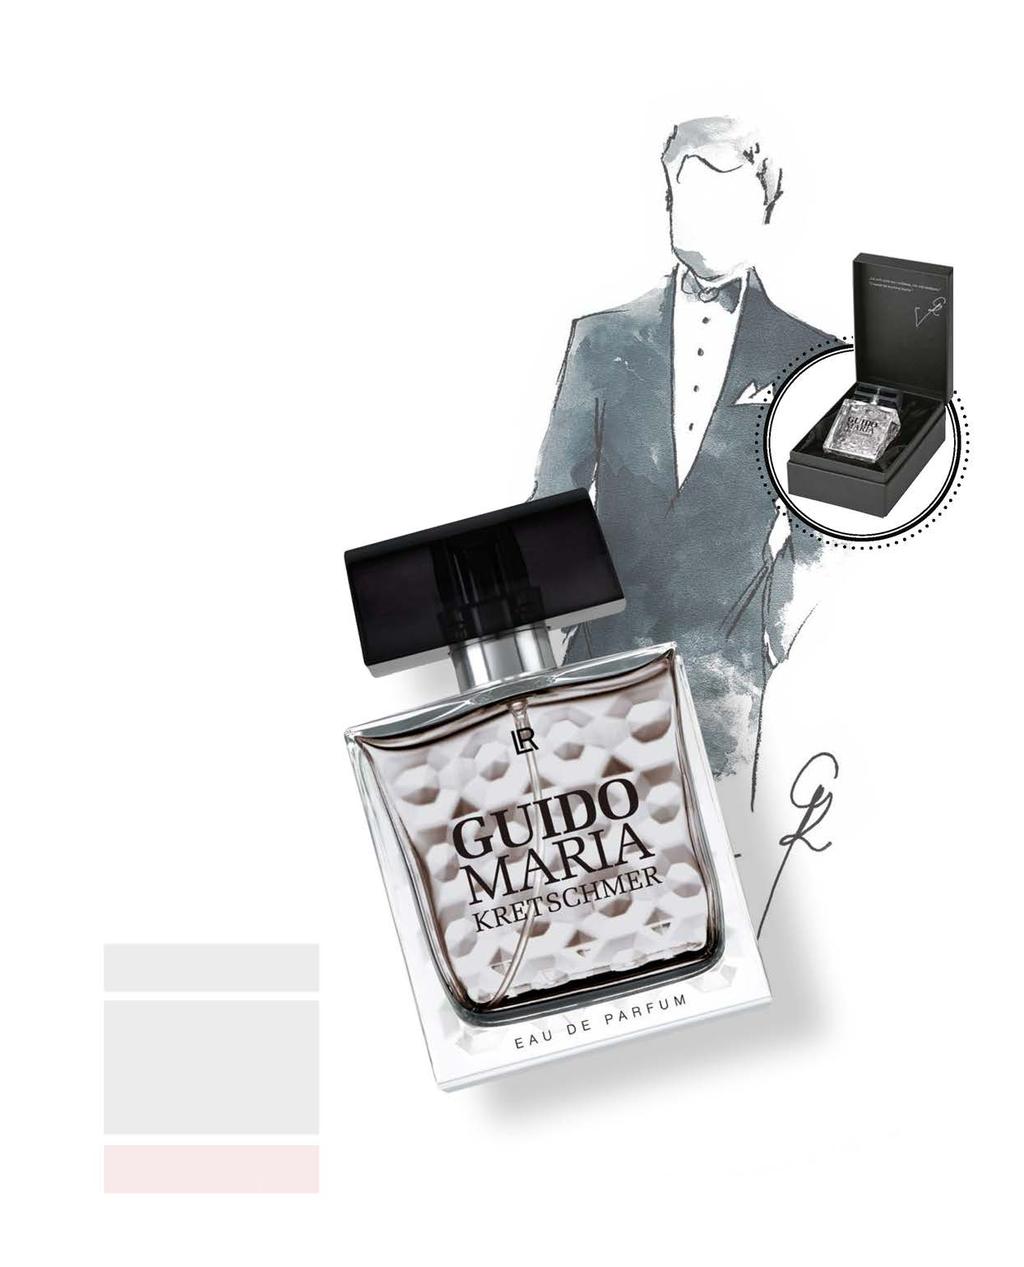 Haute parfum for men by Guido Maria Kretschmer LR HERENPARFUMS 137 Net zoals het parfum voor vrouwen, draagt ook het parfum voor mannen het handschrift van de designer: elegant, hoogwaardig, tijdloos